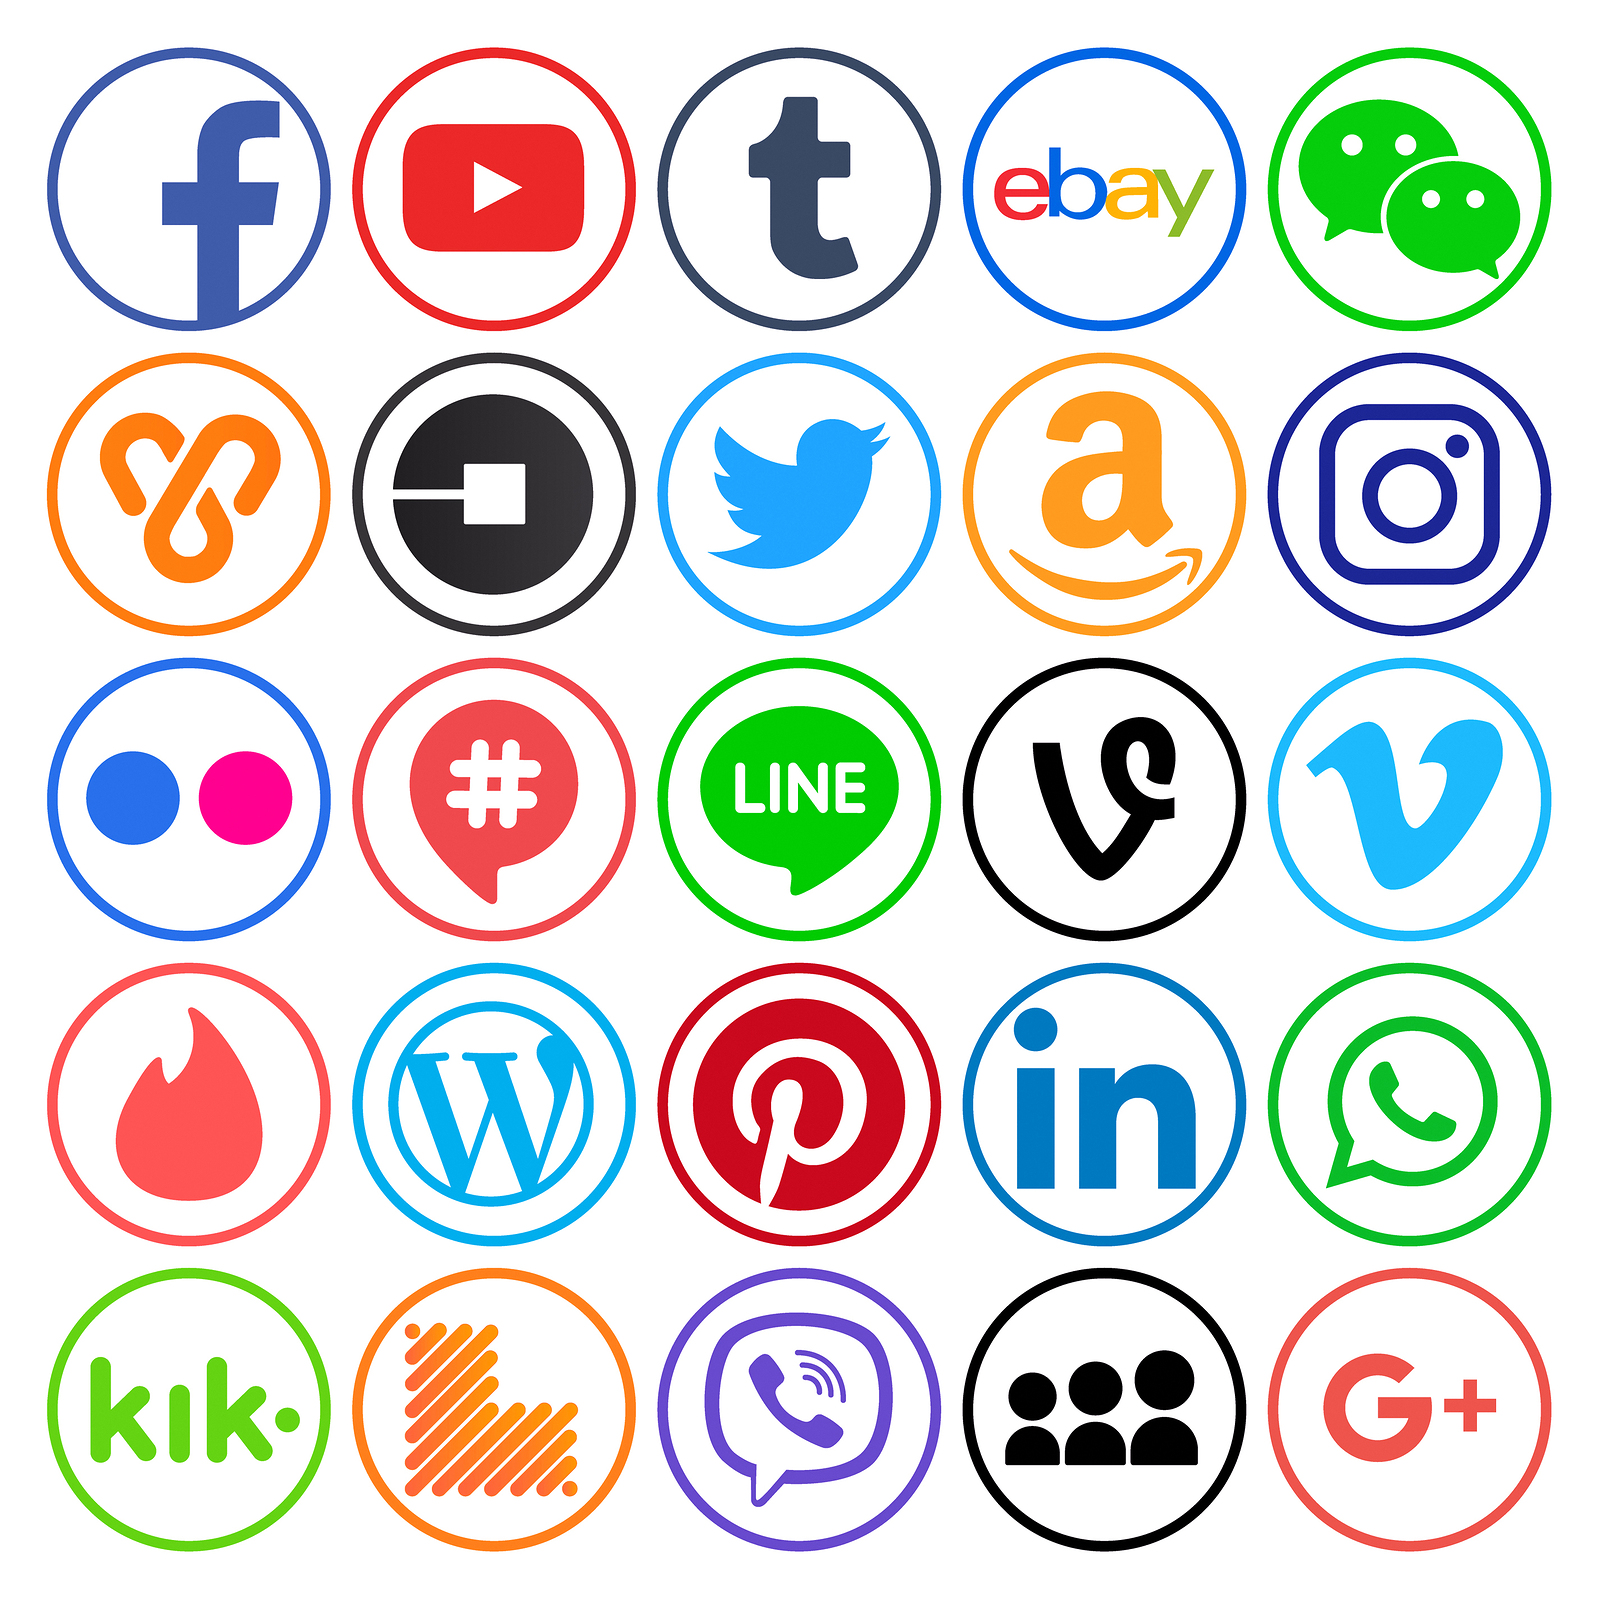 Logos for popular web platforms